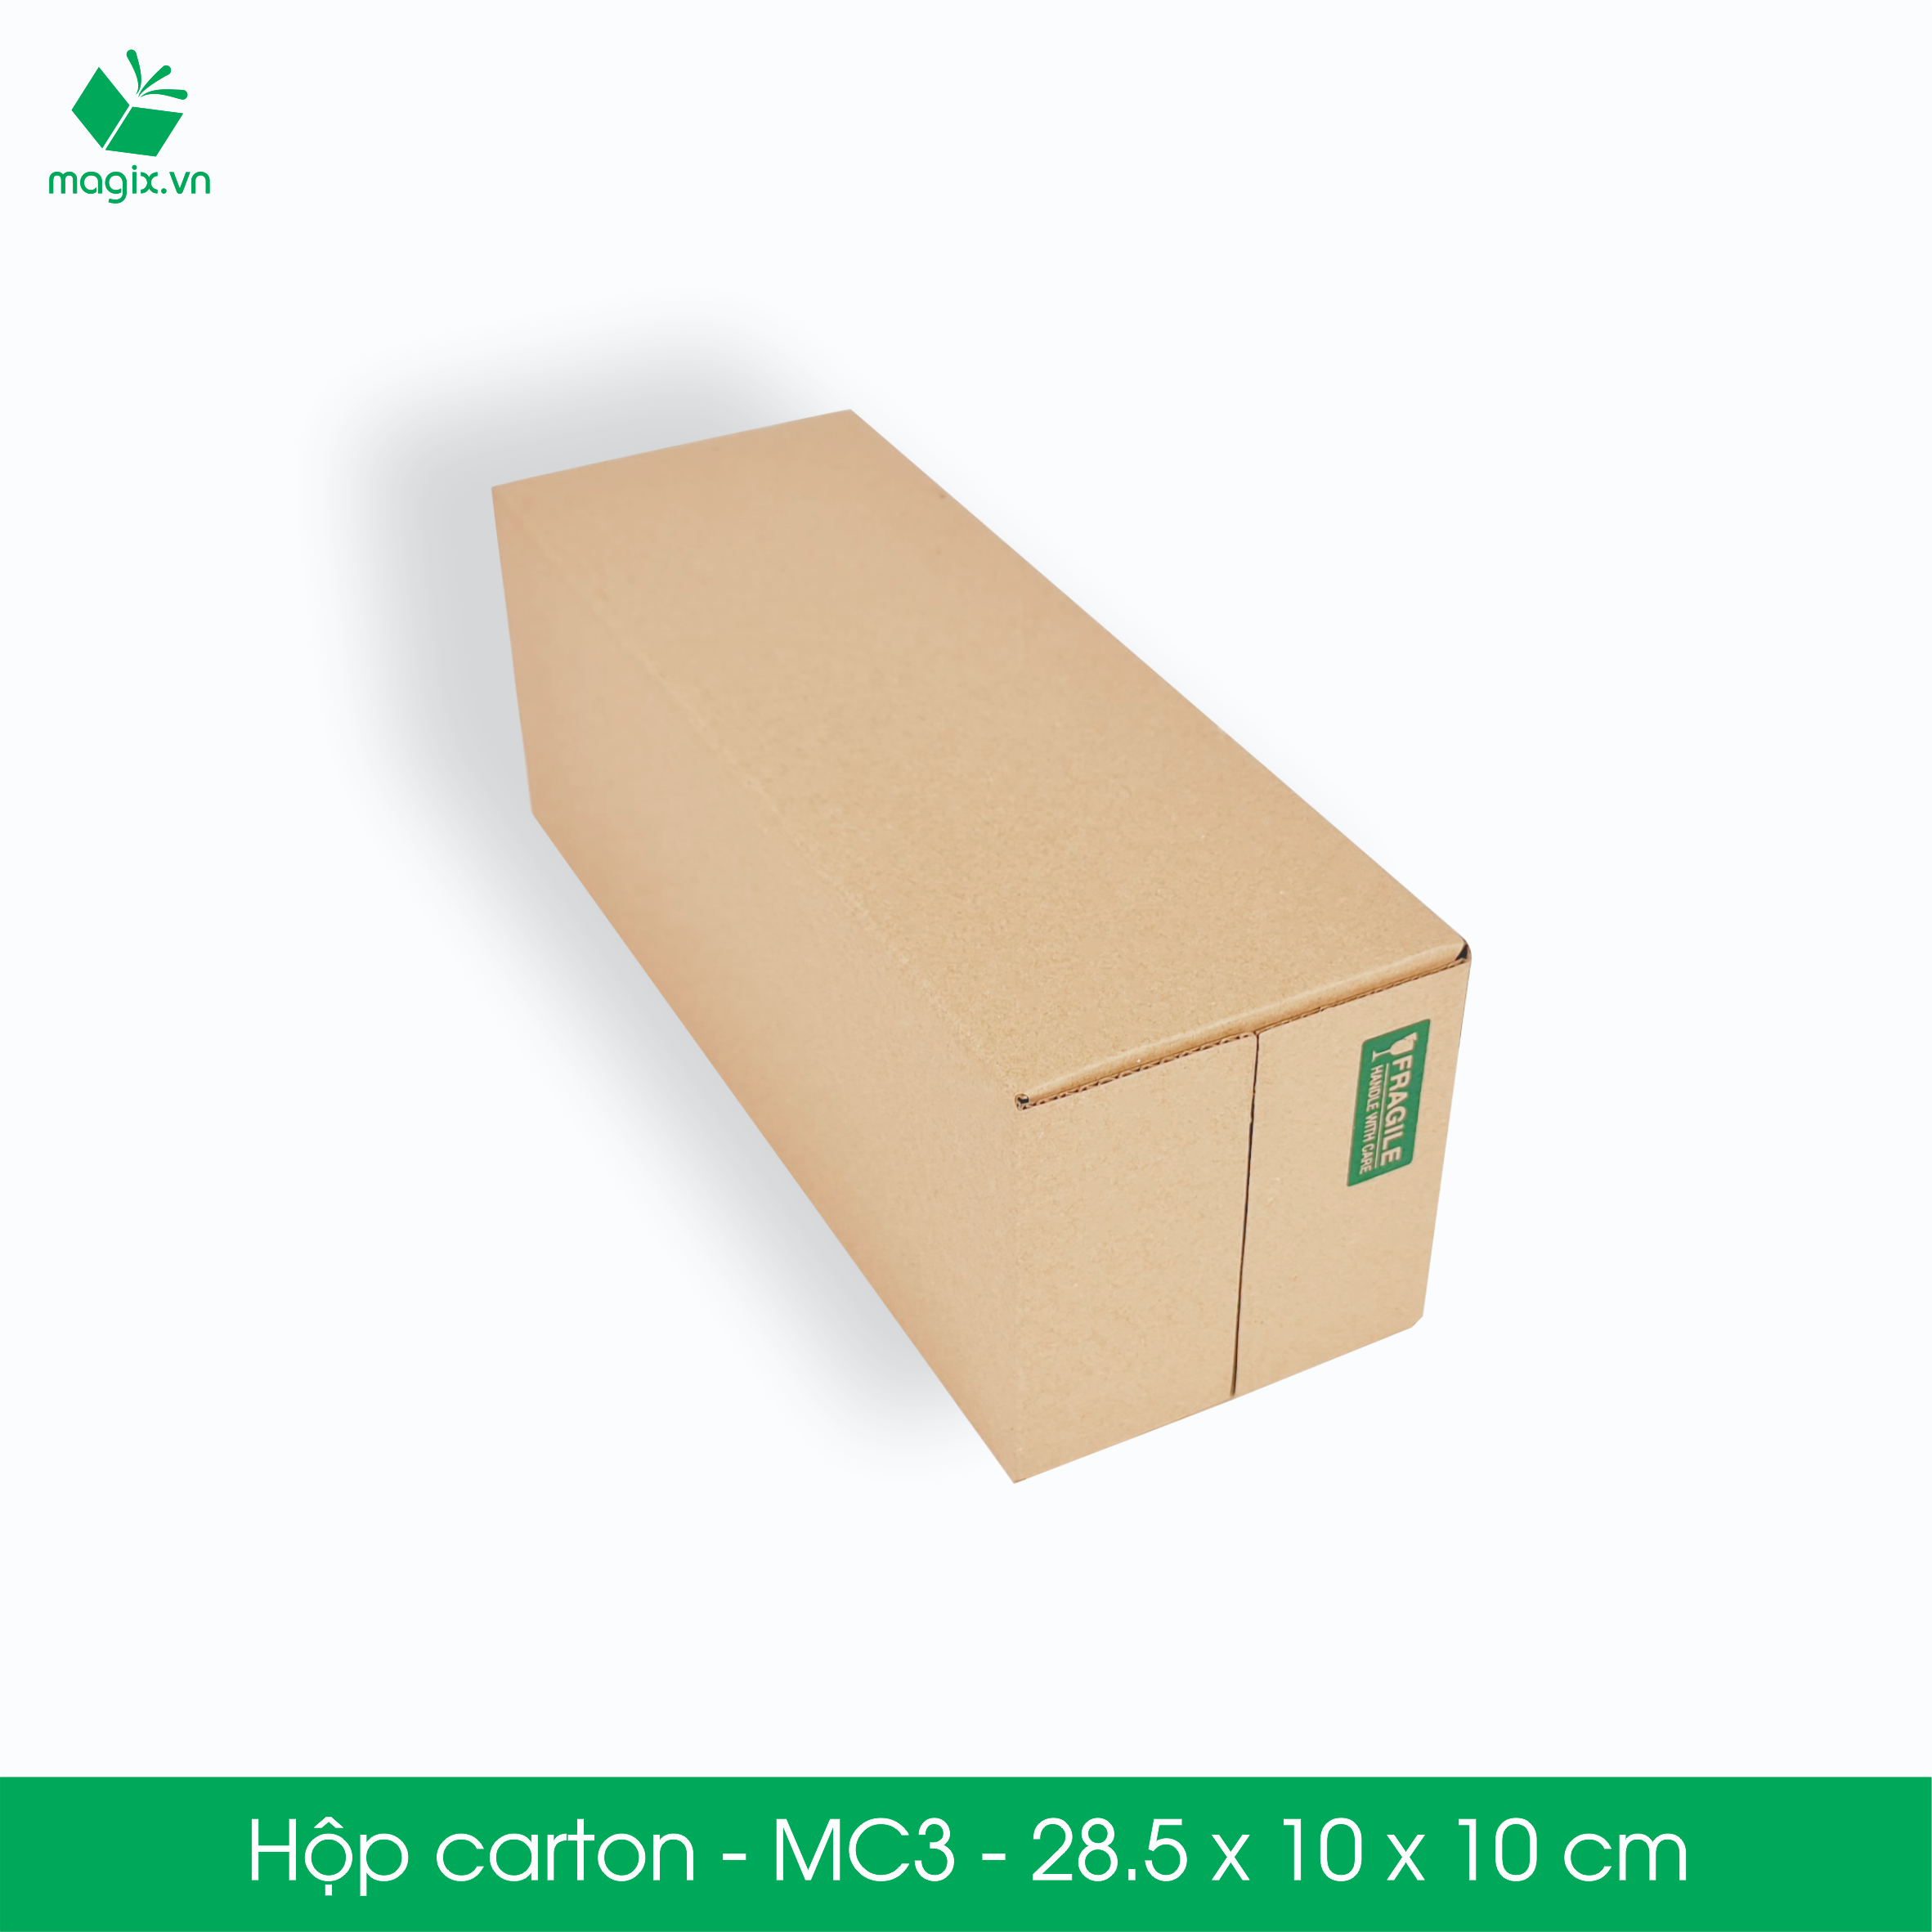 MC3 - 28.5x10x10 cm - 60 Thùng hộp carton đóng hàng